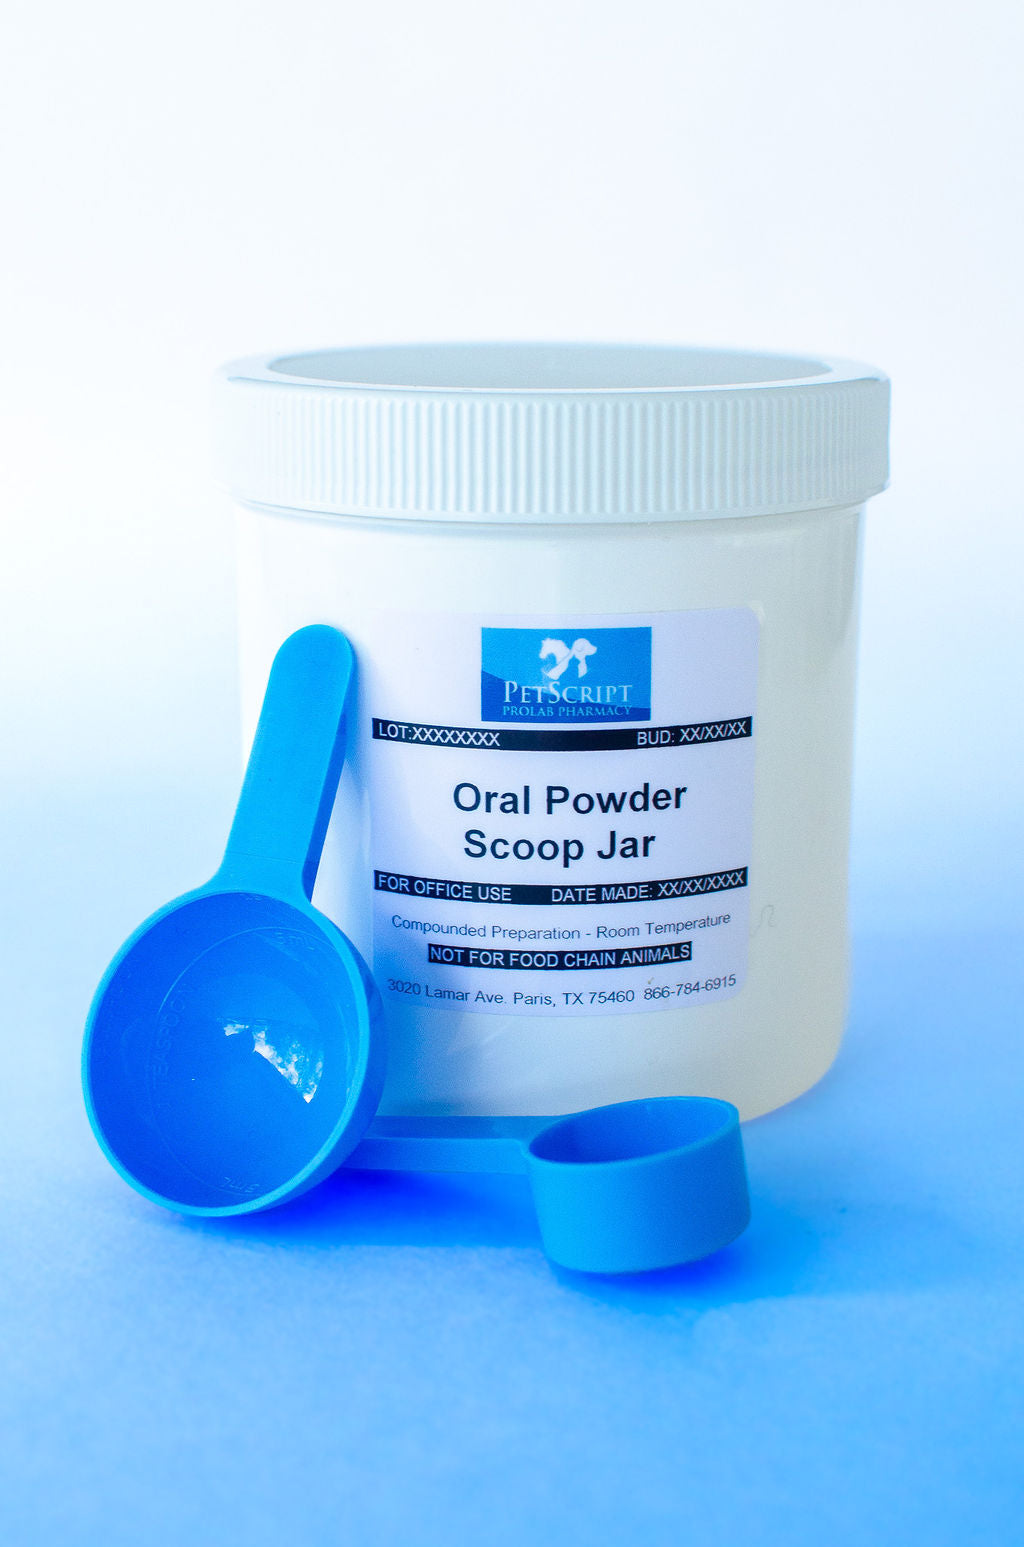 Trimethoprim/Sulfadiazine  Oral Powder - PetScript Pharmacy